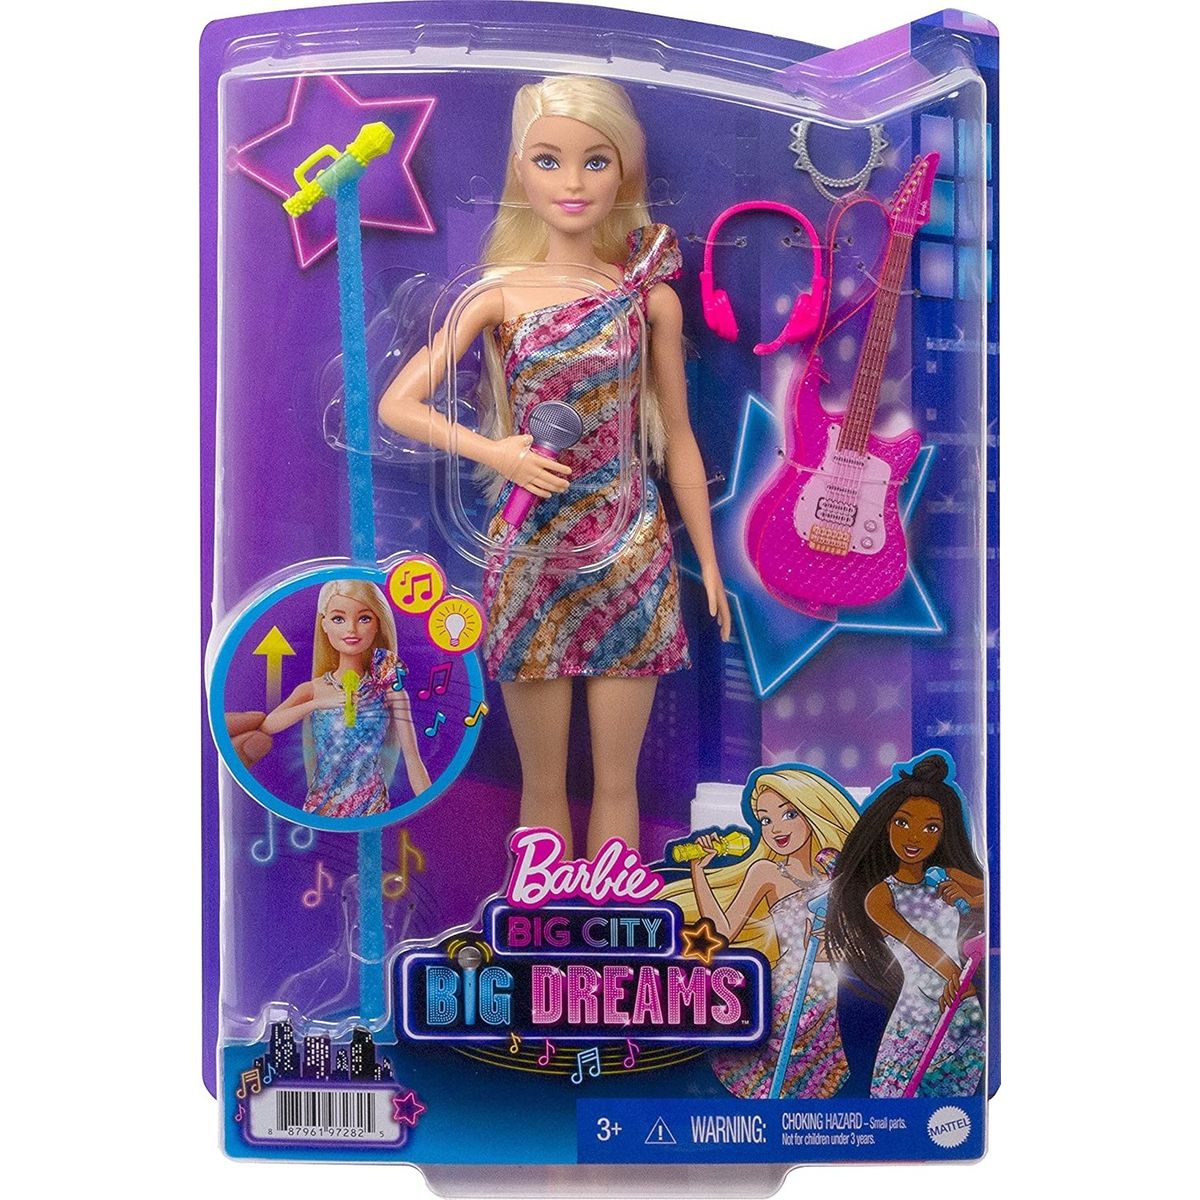 Barbie - poupée malibu chanteuse (+ accessoires) - 30 cm